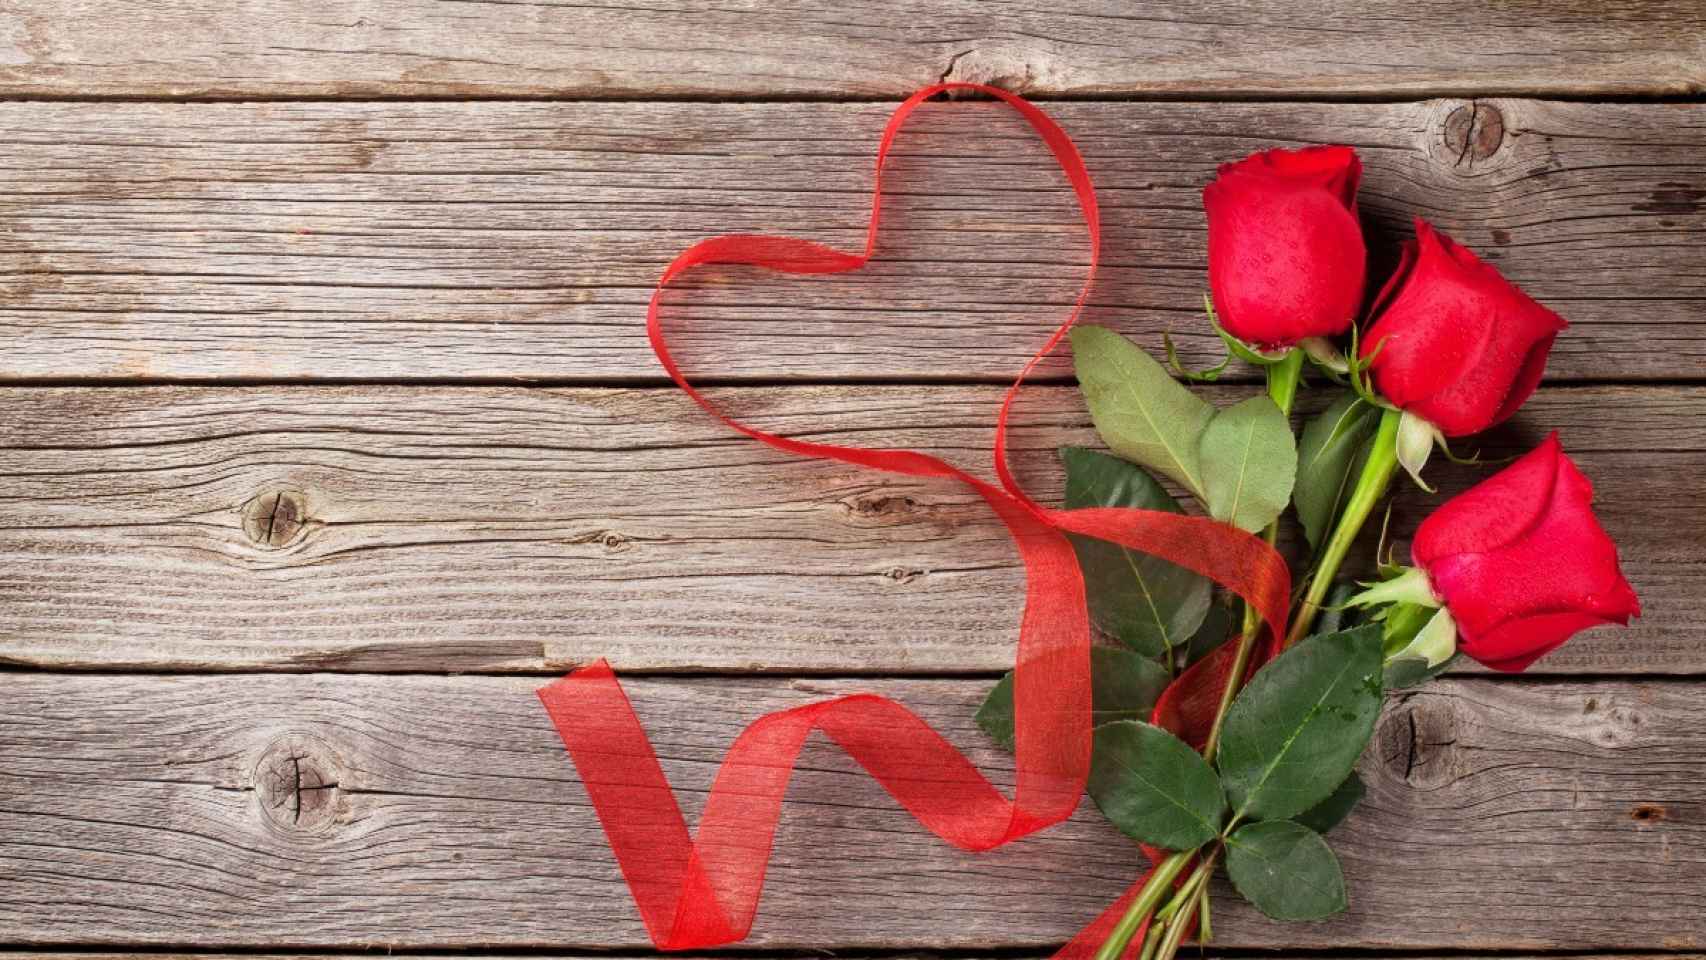 Regalos de San Valentín 2021 para mujeres con los que acertar seguro